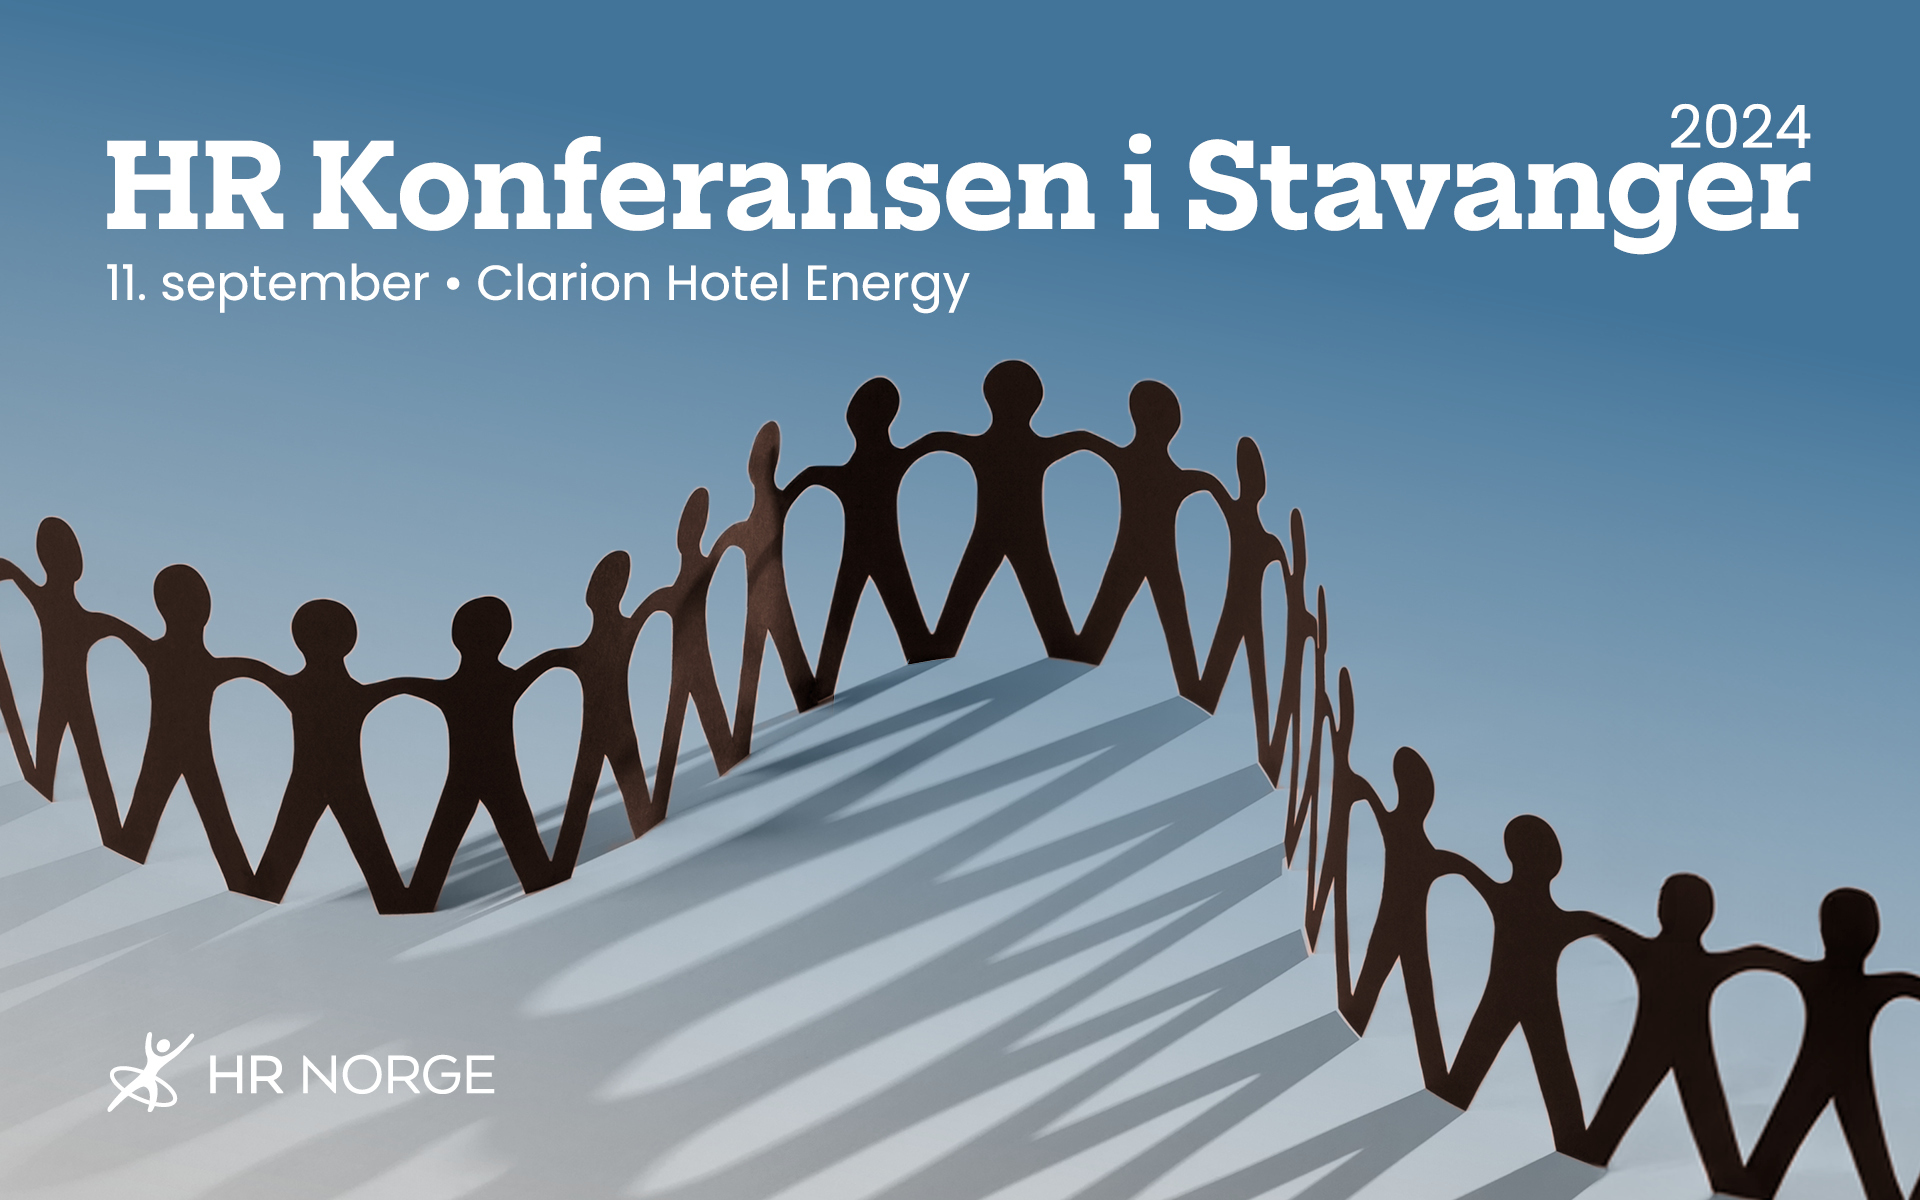 HR Konferansen i Stavanger 2024